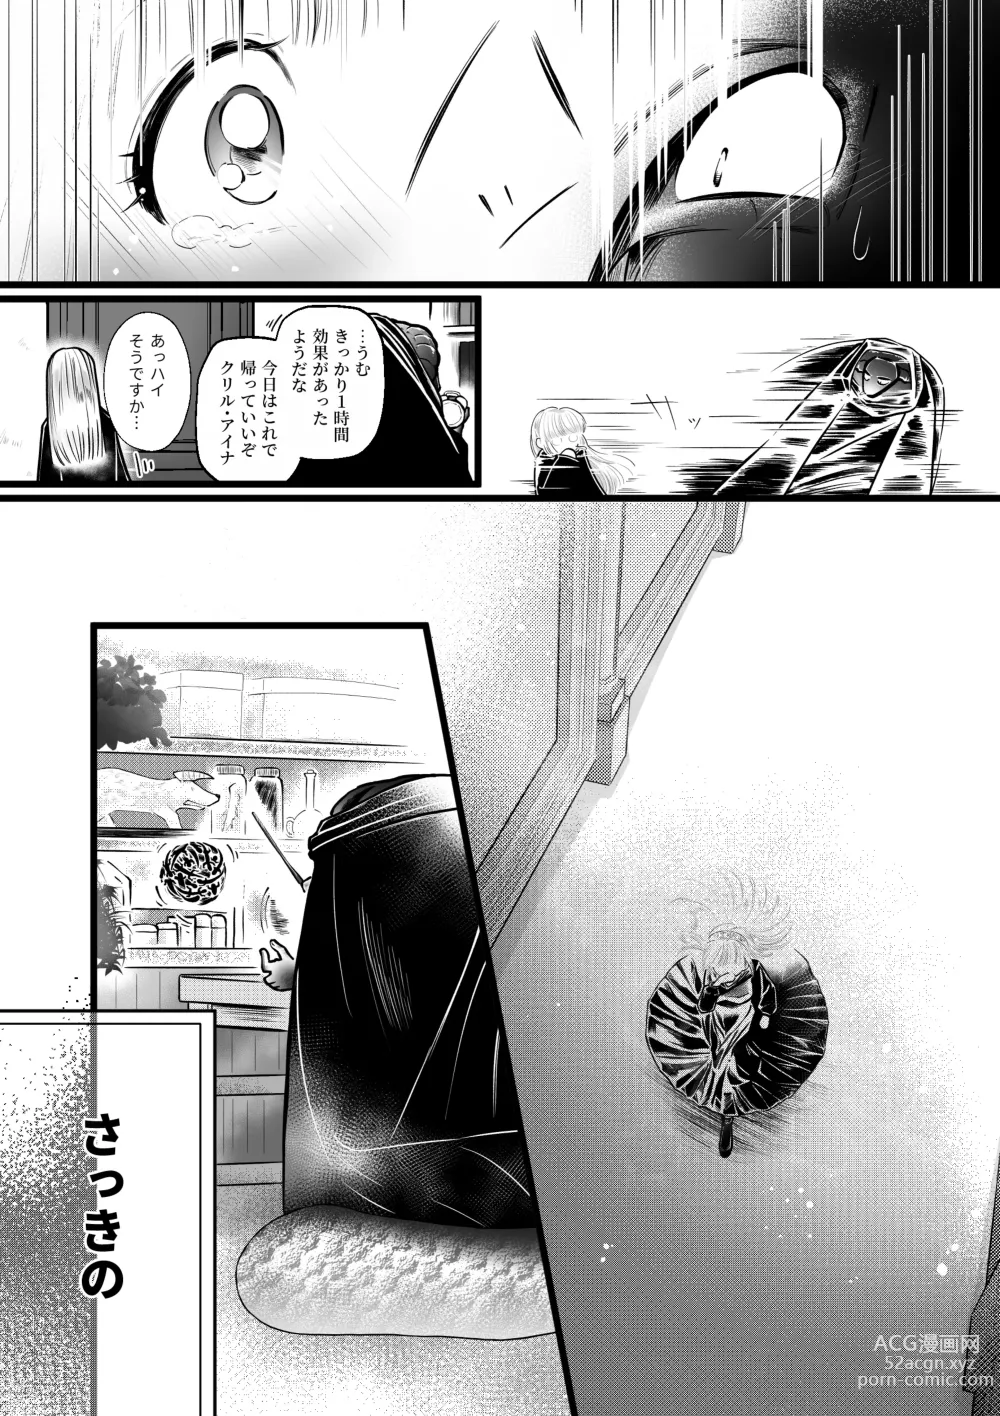 Page 7 of doujinshi Dakatsu no Gotoku Osoreteita Sensei to Kazukazu no Ero Happening ni Mimawarete Kindan no Kankaku Shadan Otoshiana Kouishou Chiryou